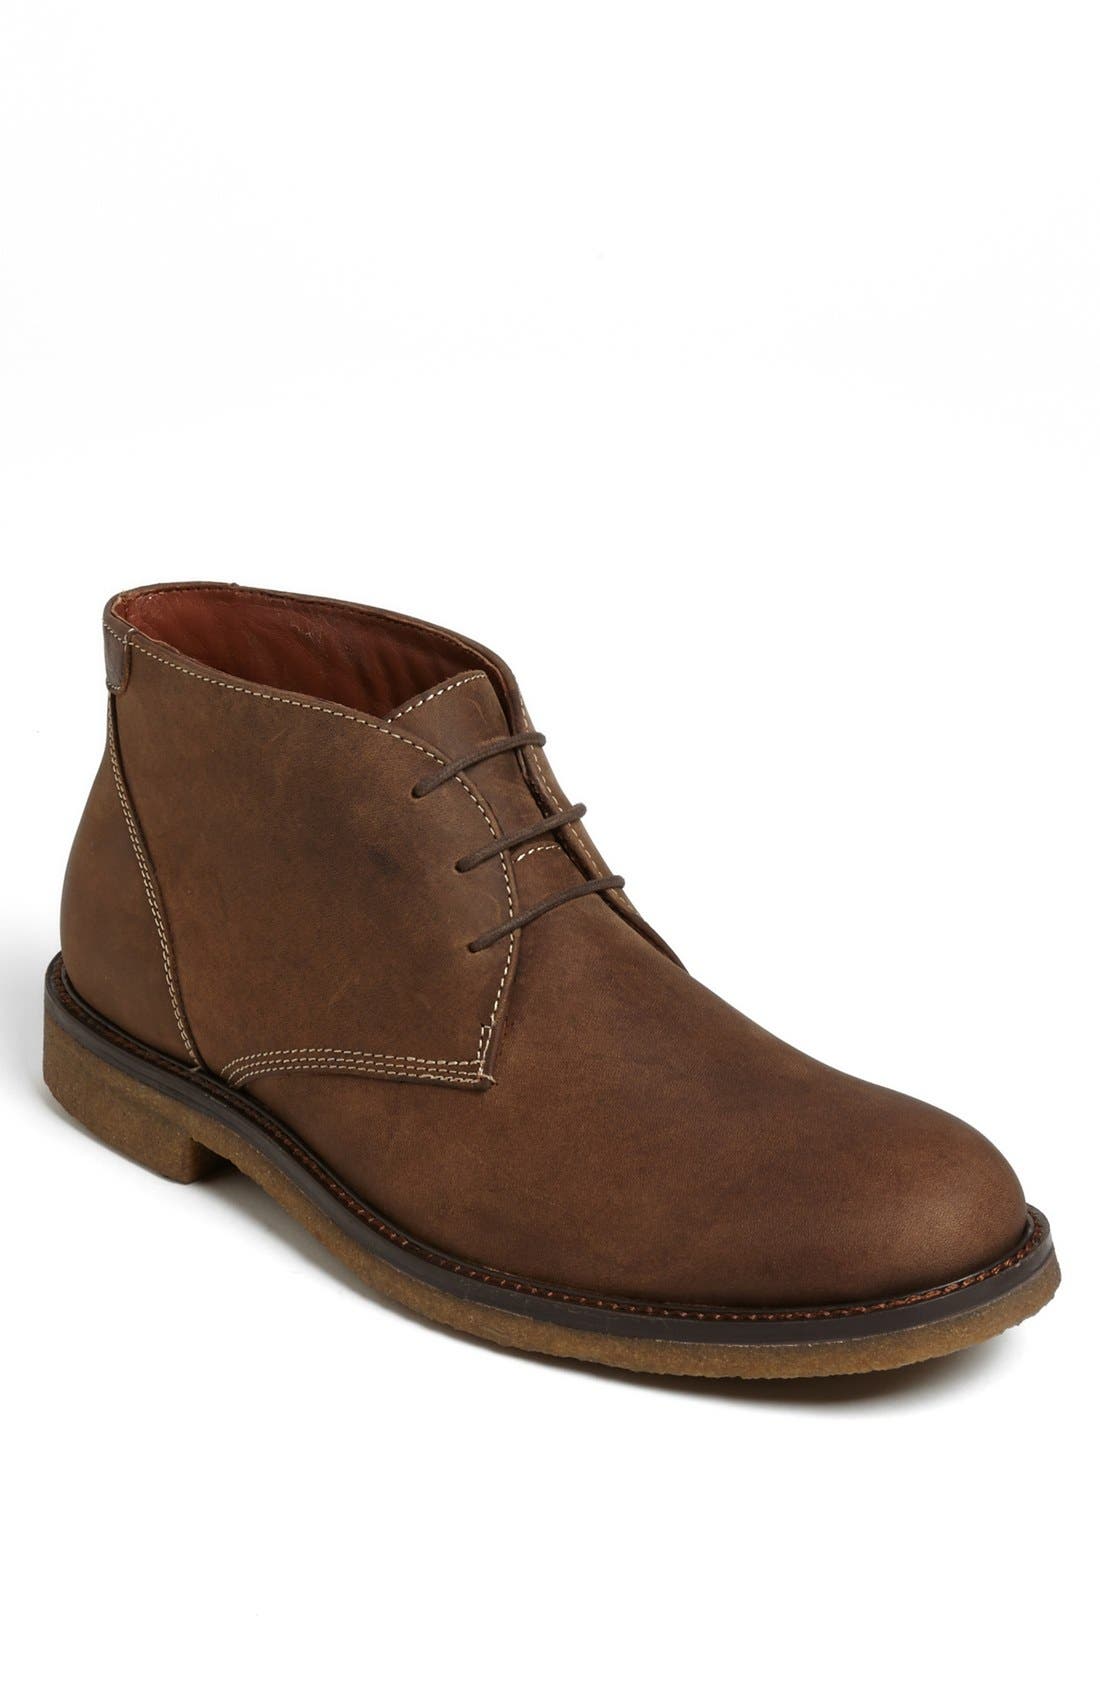 203961 SPBT50 Men's Shoes Size 9 M Black Leather Boots Johnston & Murphy 